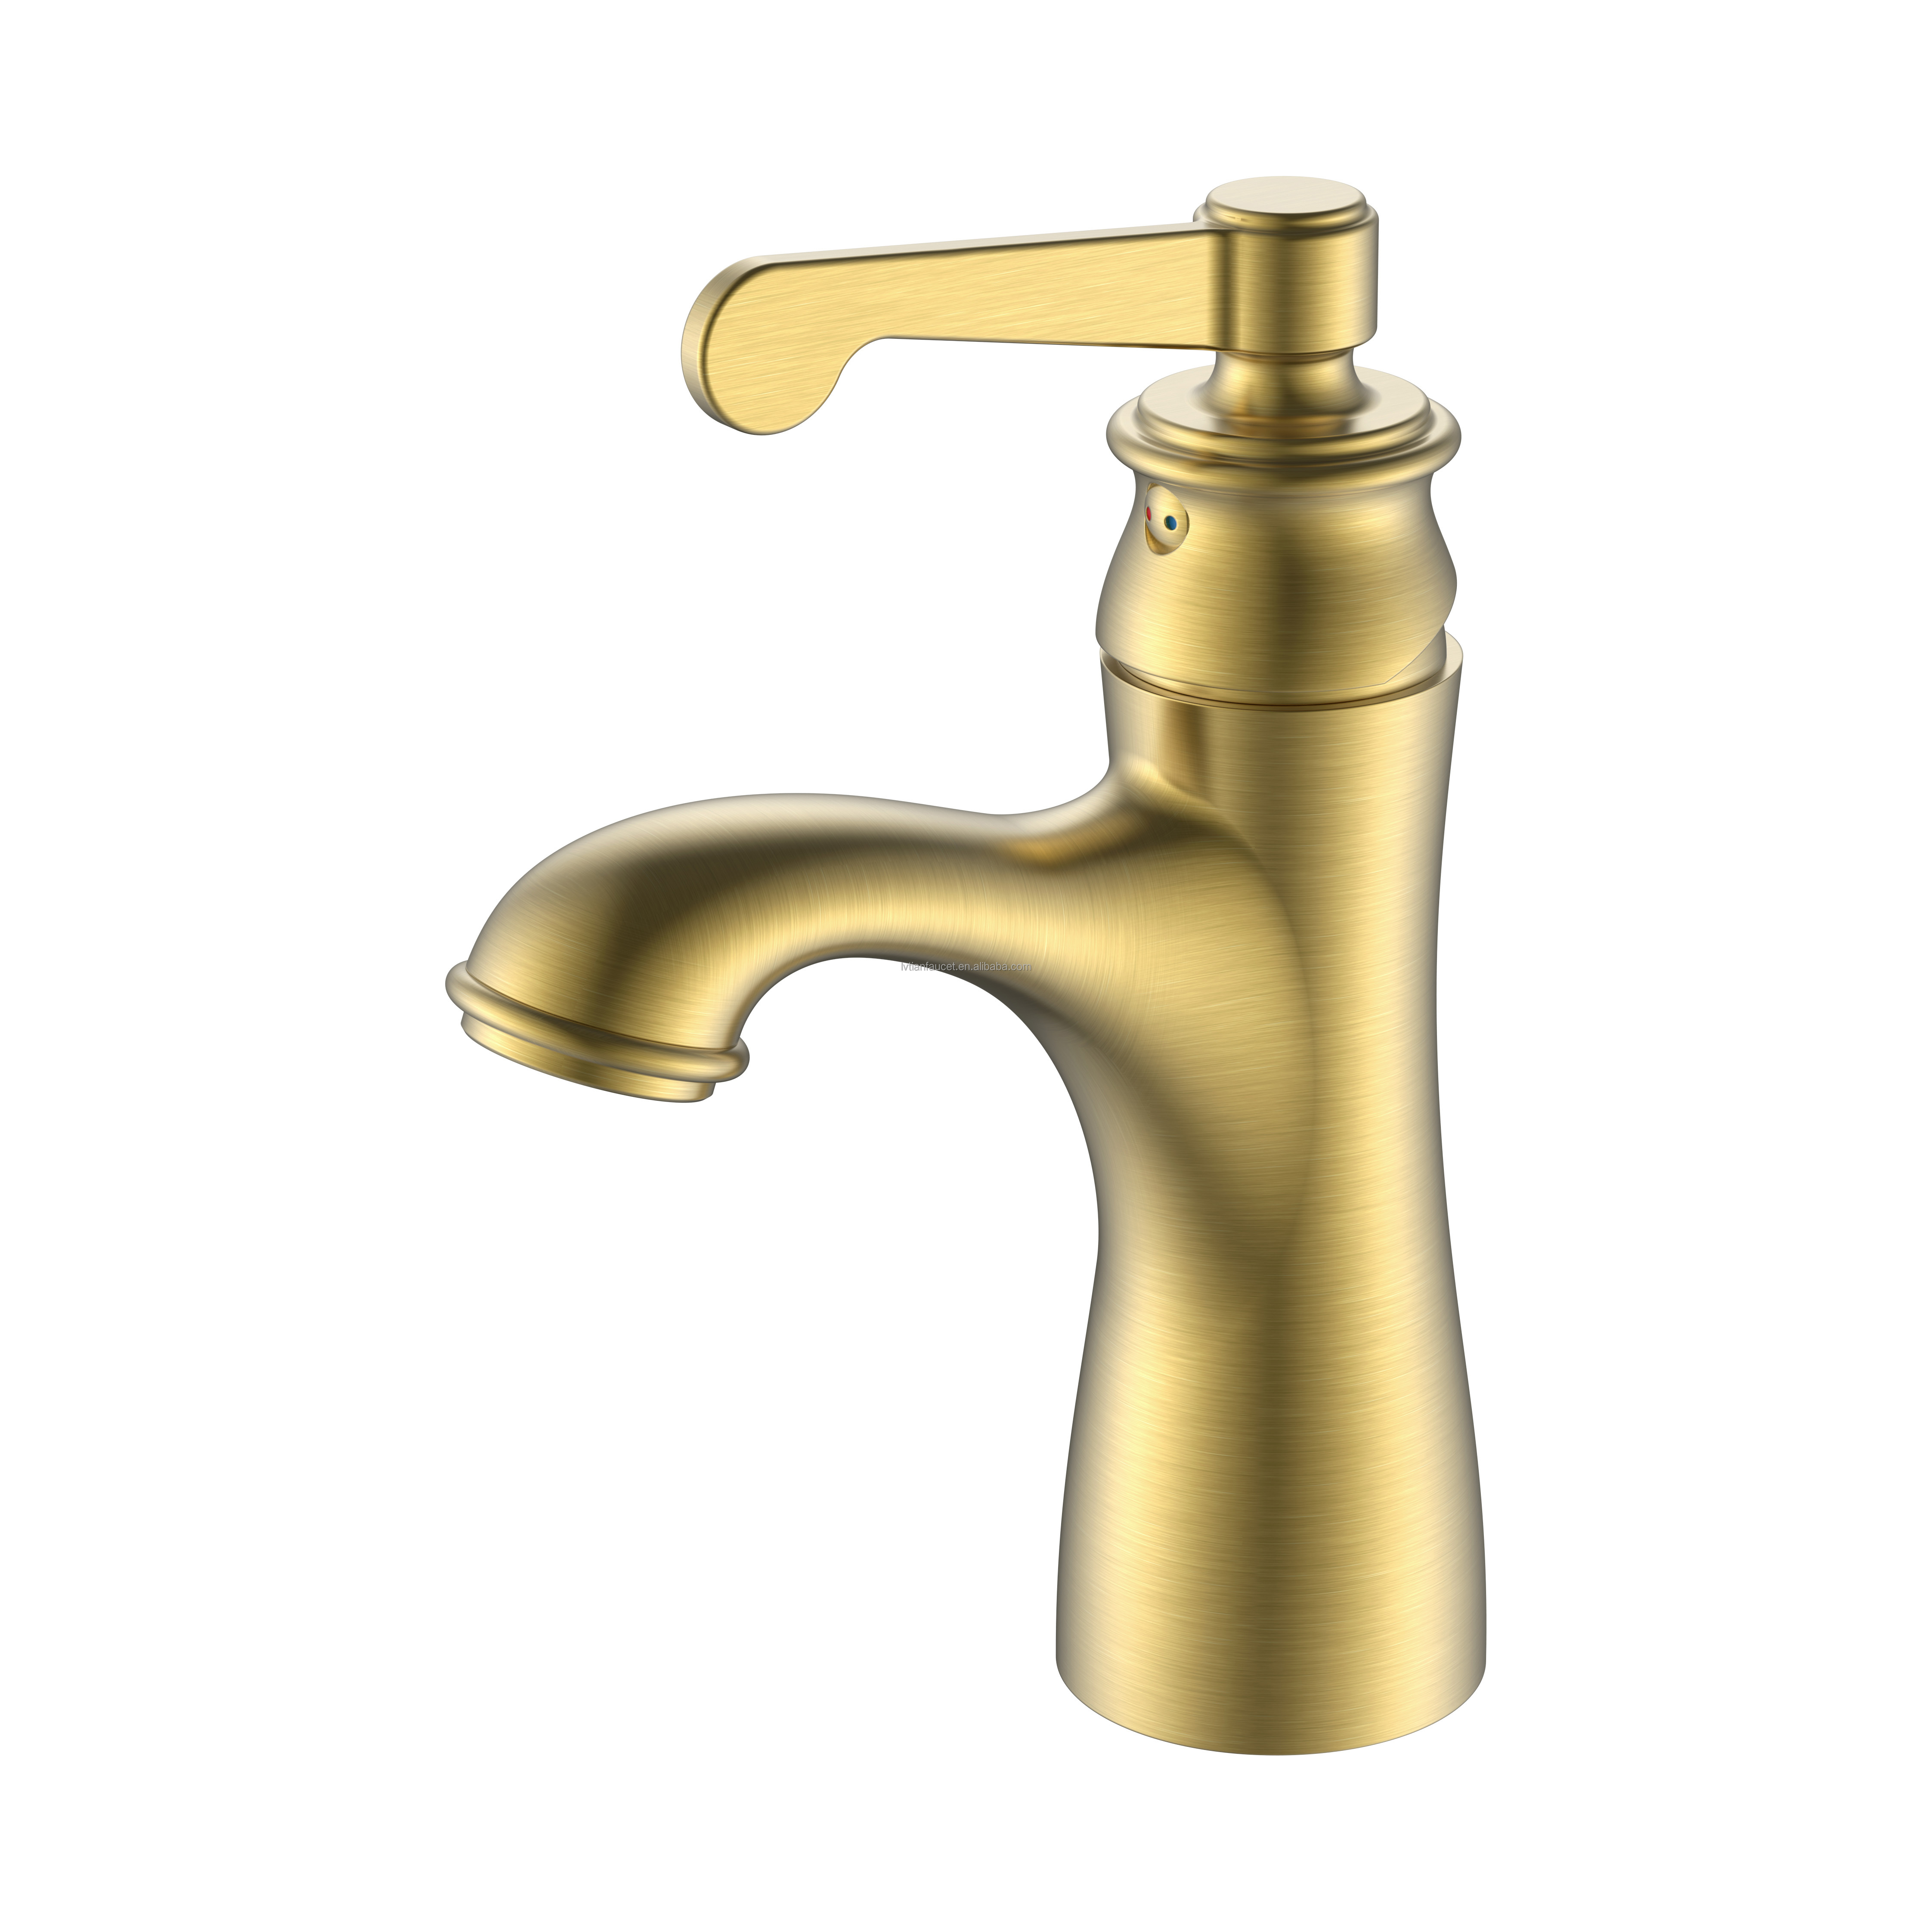 Améliorez l'attrait visuel de votre salle de douche avec des robinets de salle de bain en or brossé